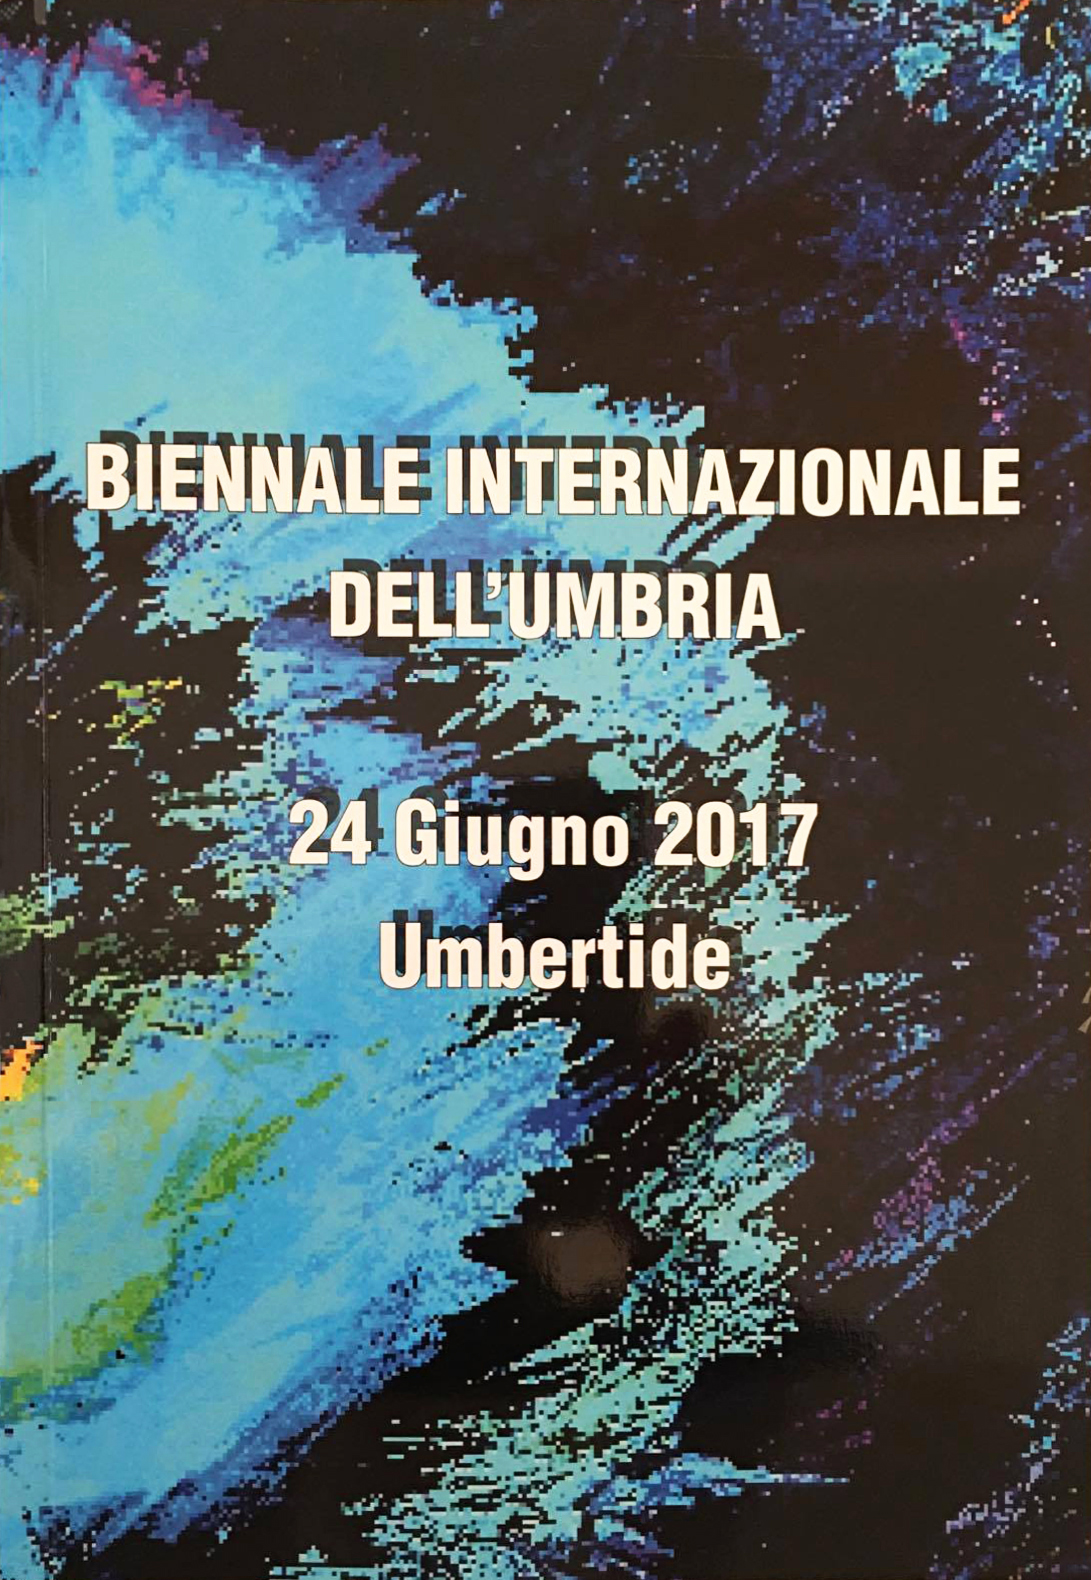 Biennale Internazionale dell'Umbria